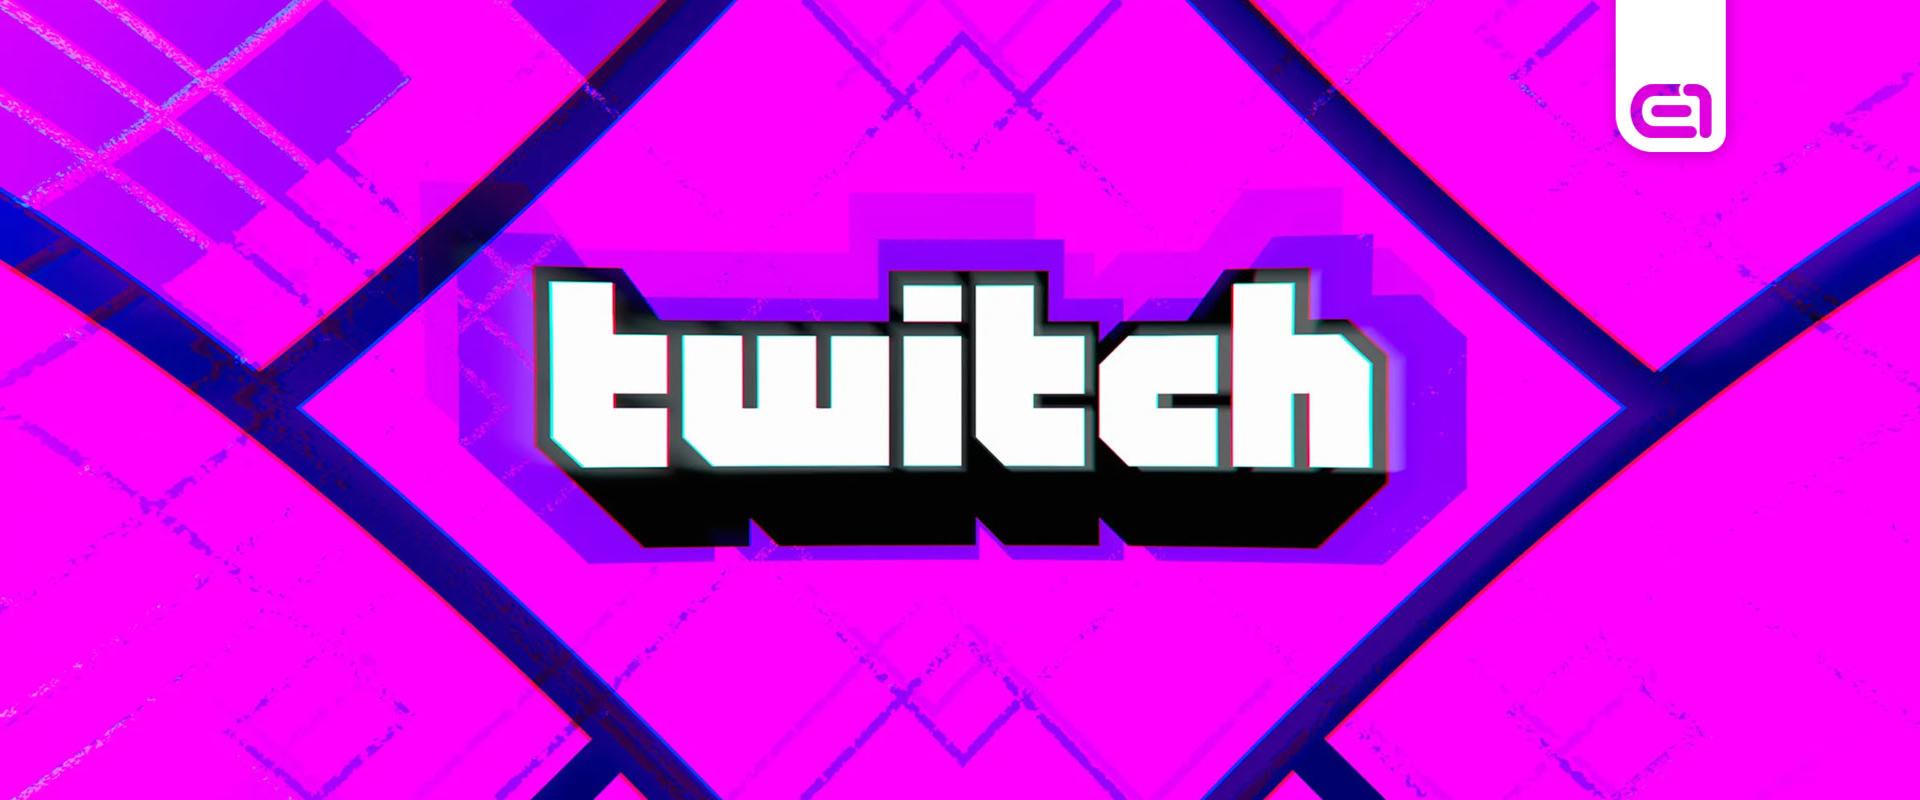 Új partner programot indít a Twitch kisebb streamereknek